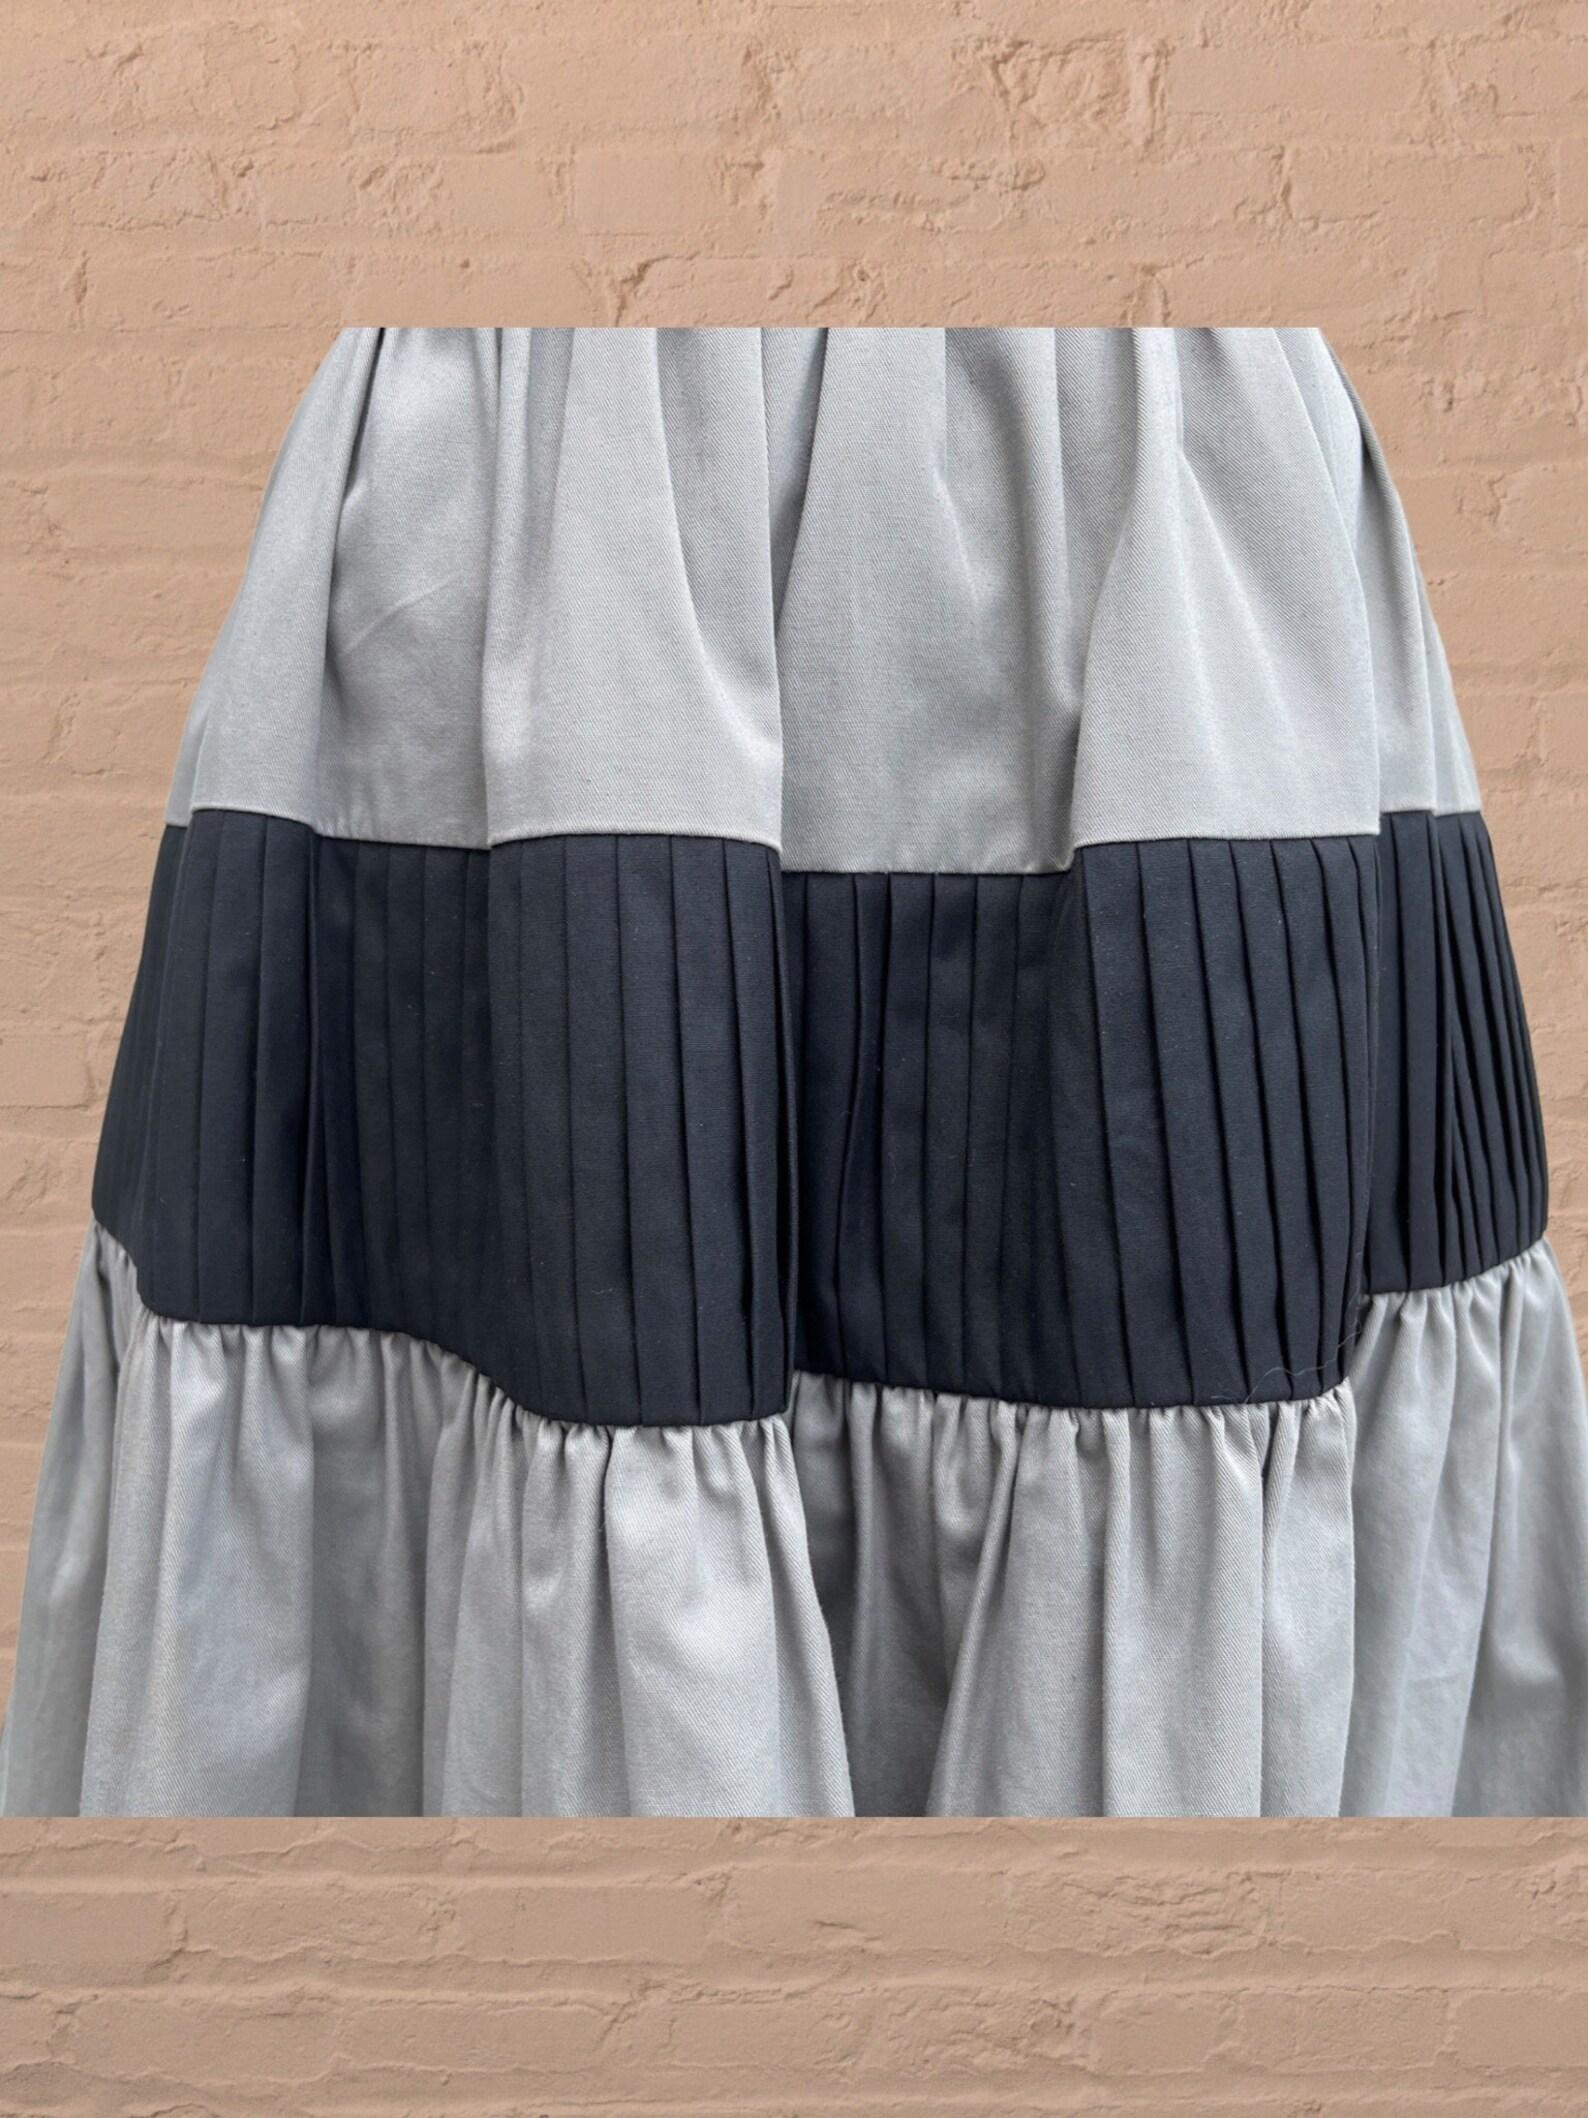 Yves Saint Laurent colorblock skirt For Sale 5